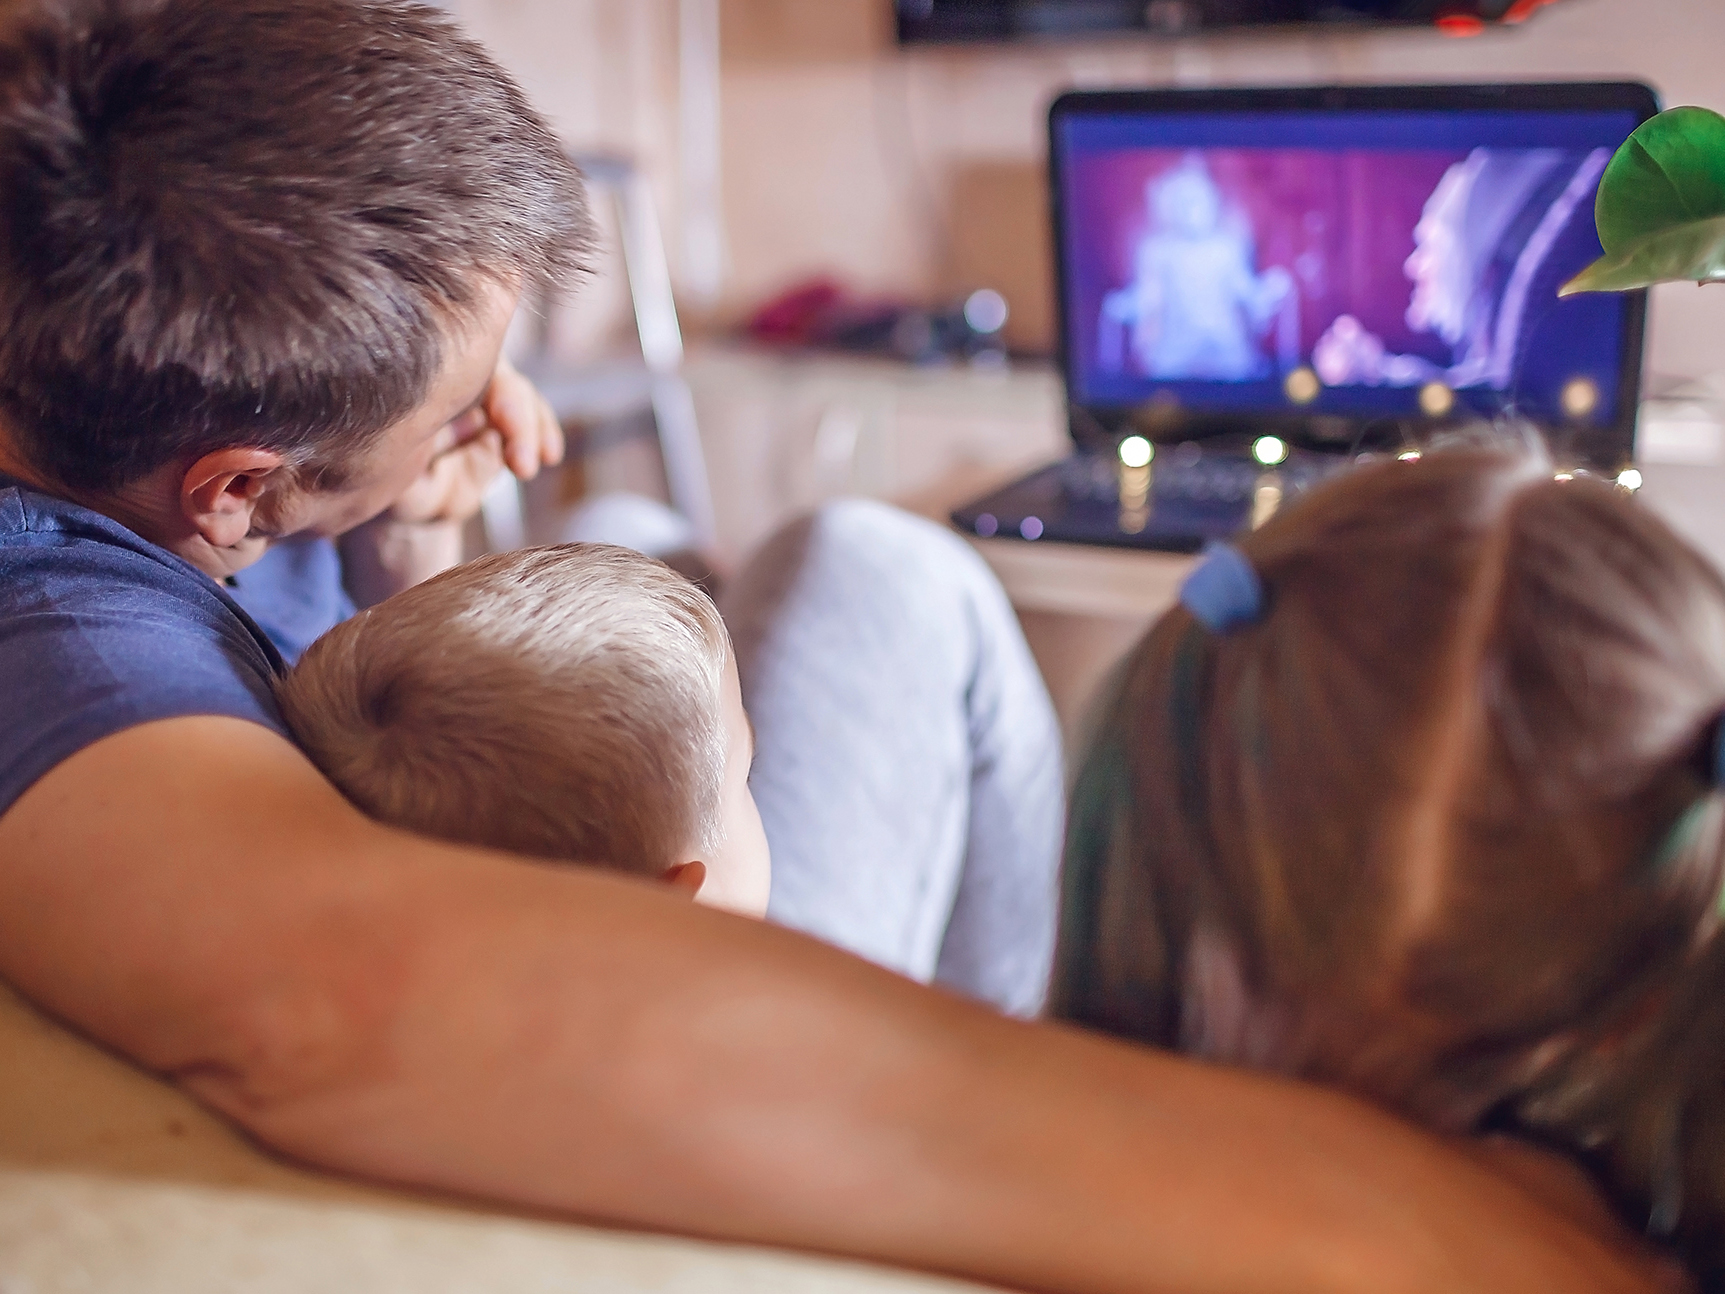 Μελέτη: Τηλεόραση και μικρά παιδιά – Τι προβλήματα μπορεί να εμφανιστούν